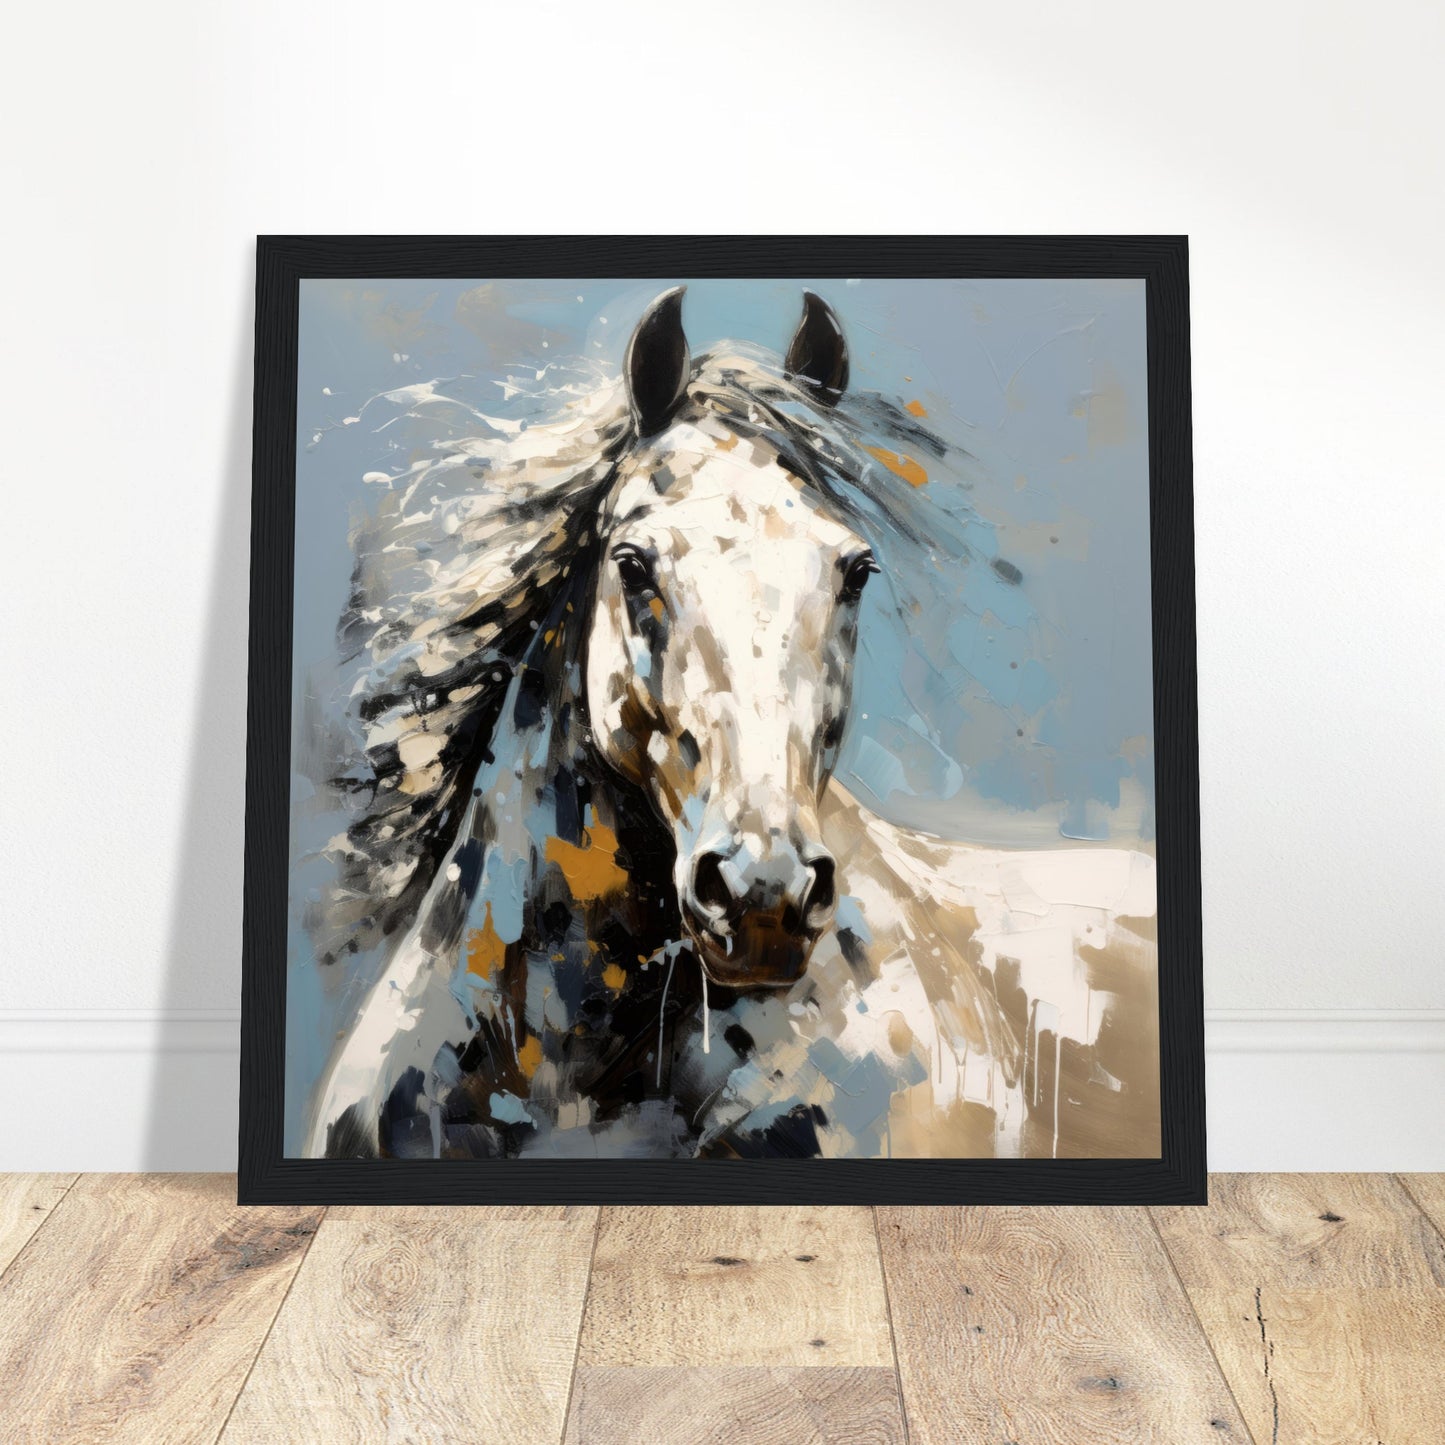 Equine Elegance Artwork - Print Room Ltd White frame 30x30 cm / 12x12"